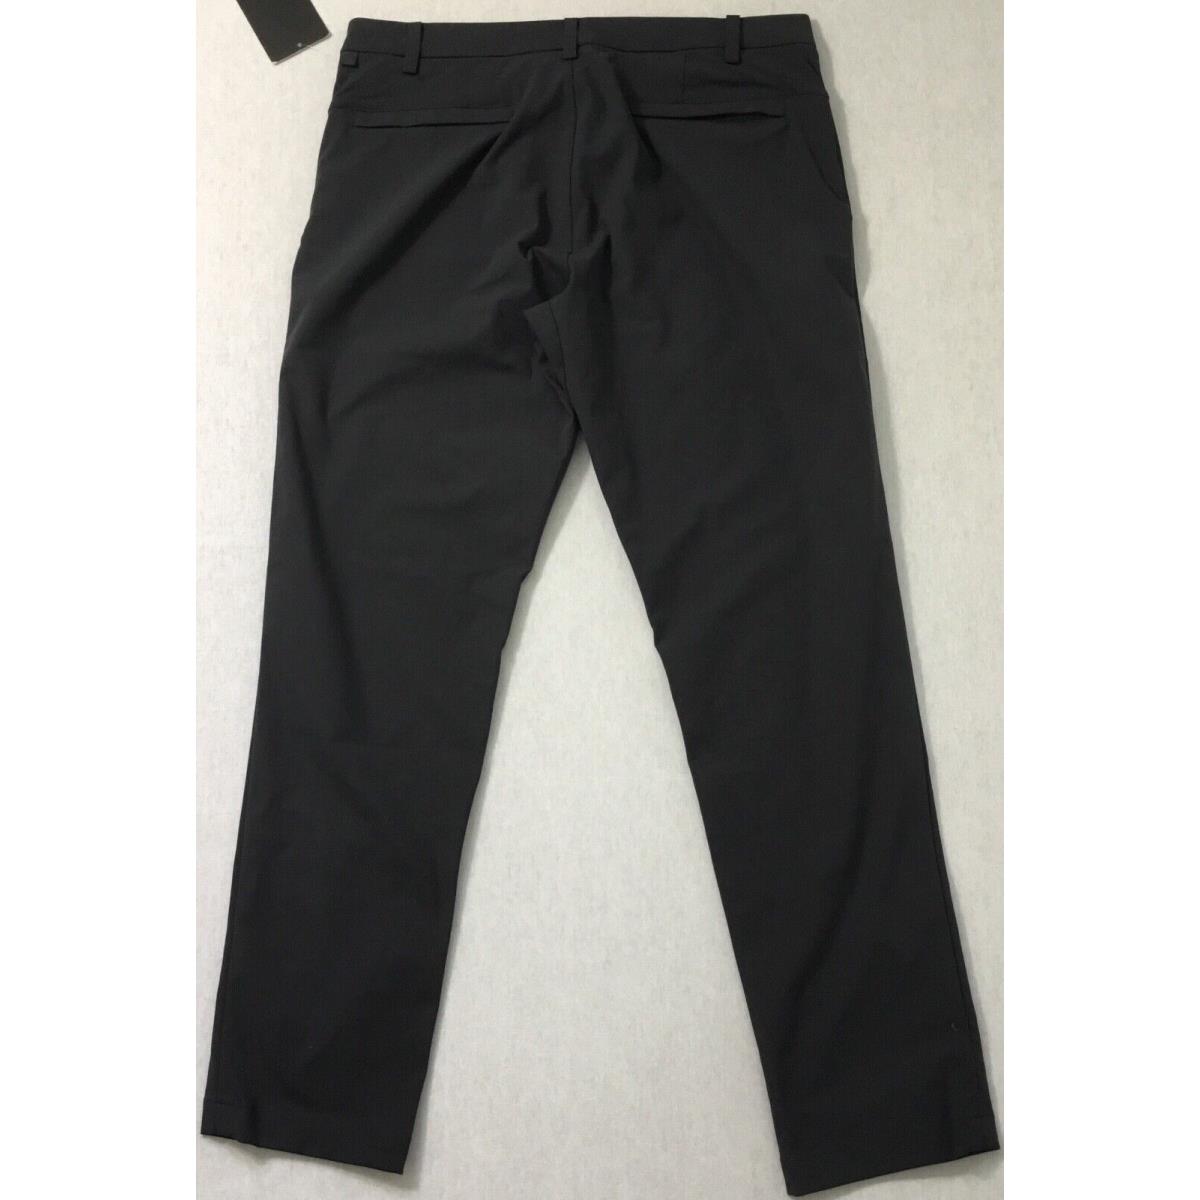 Lululemon Men s Pants Commission Pant Classic 32 Length LM5710S Obsi Size 31